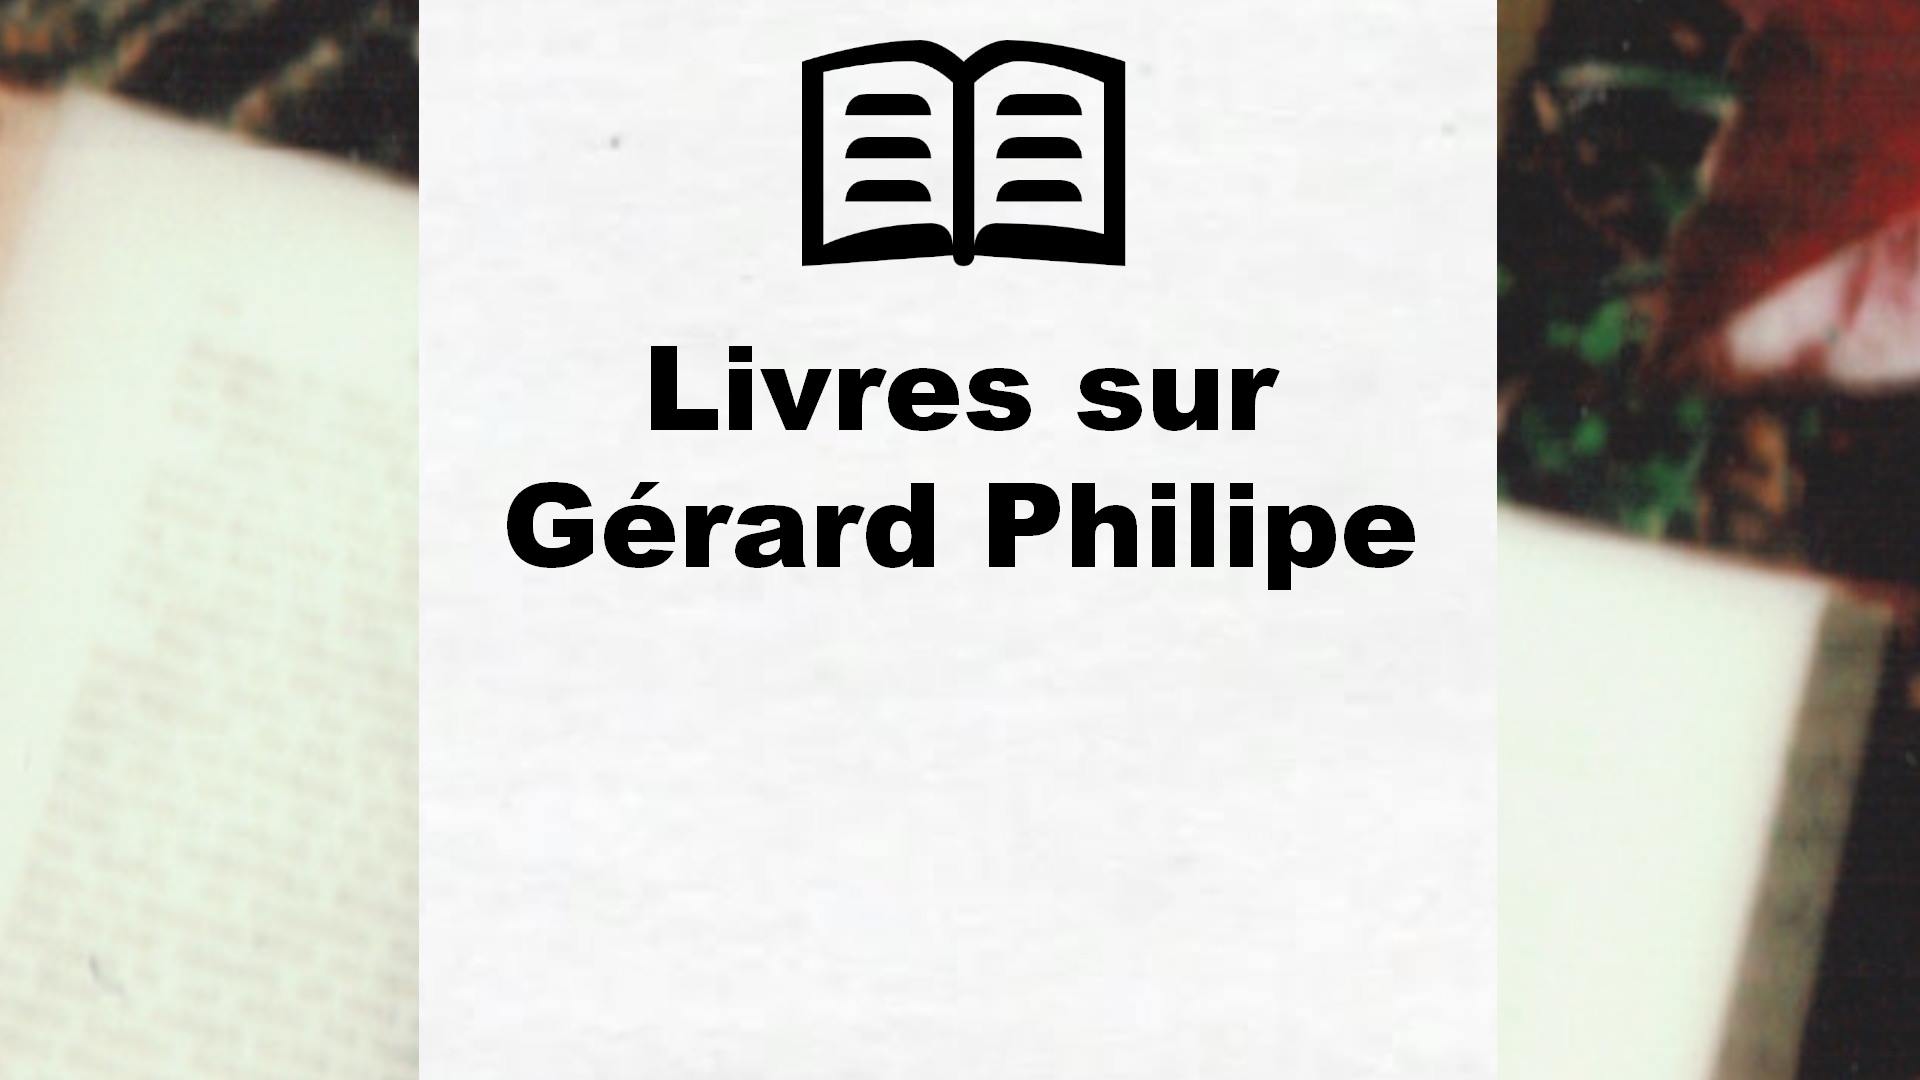 Livres sur Gérard Philipe